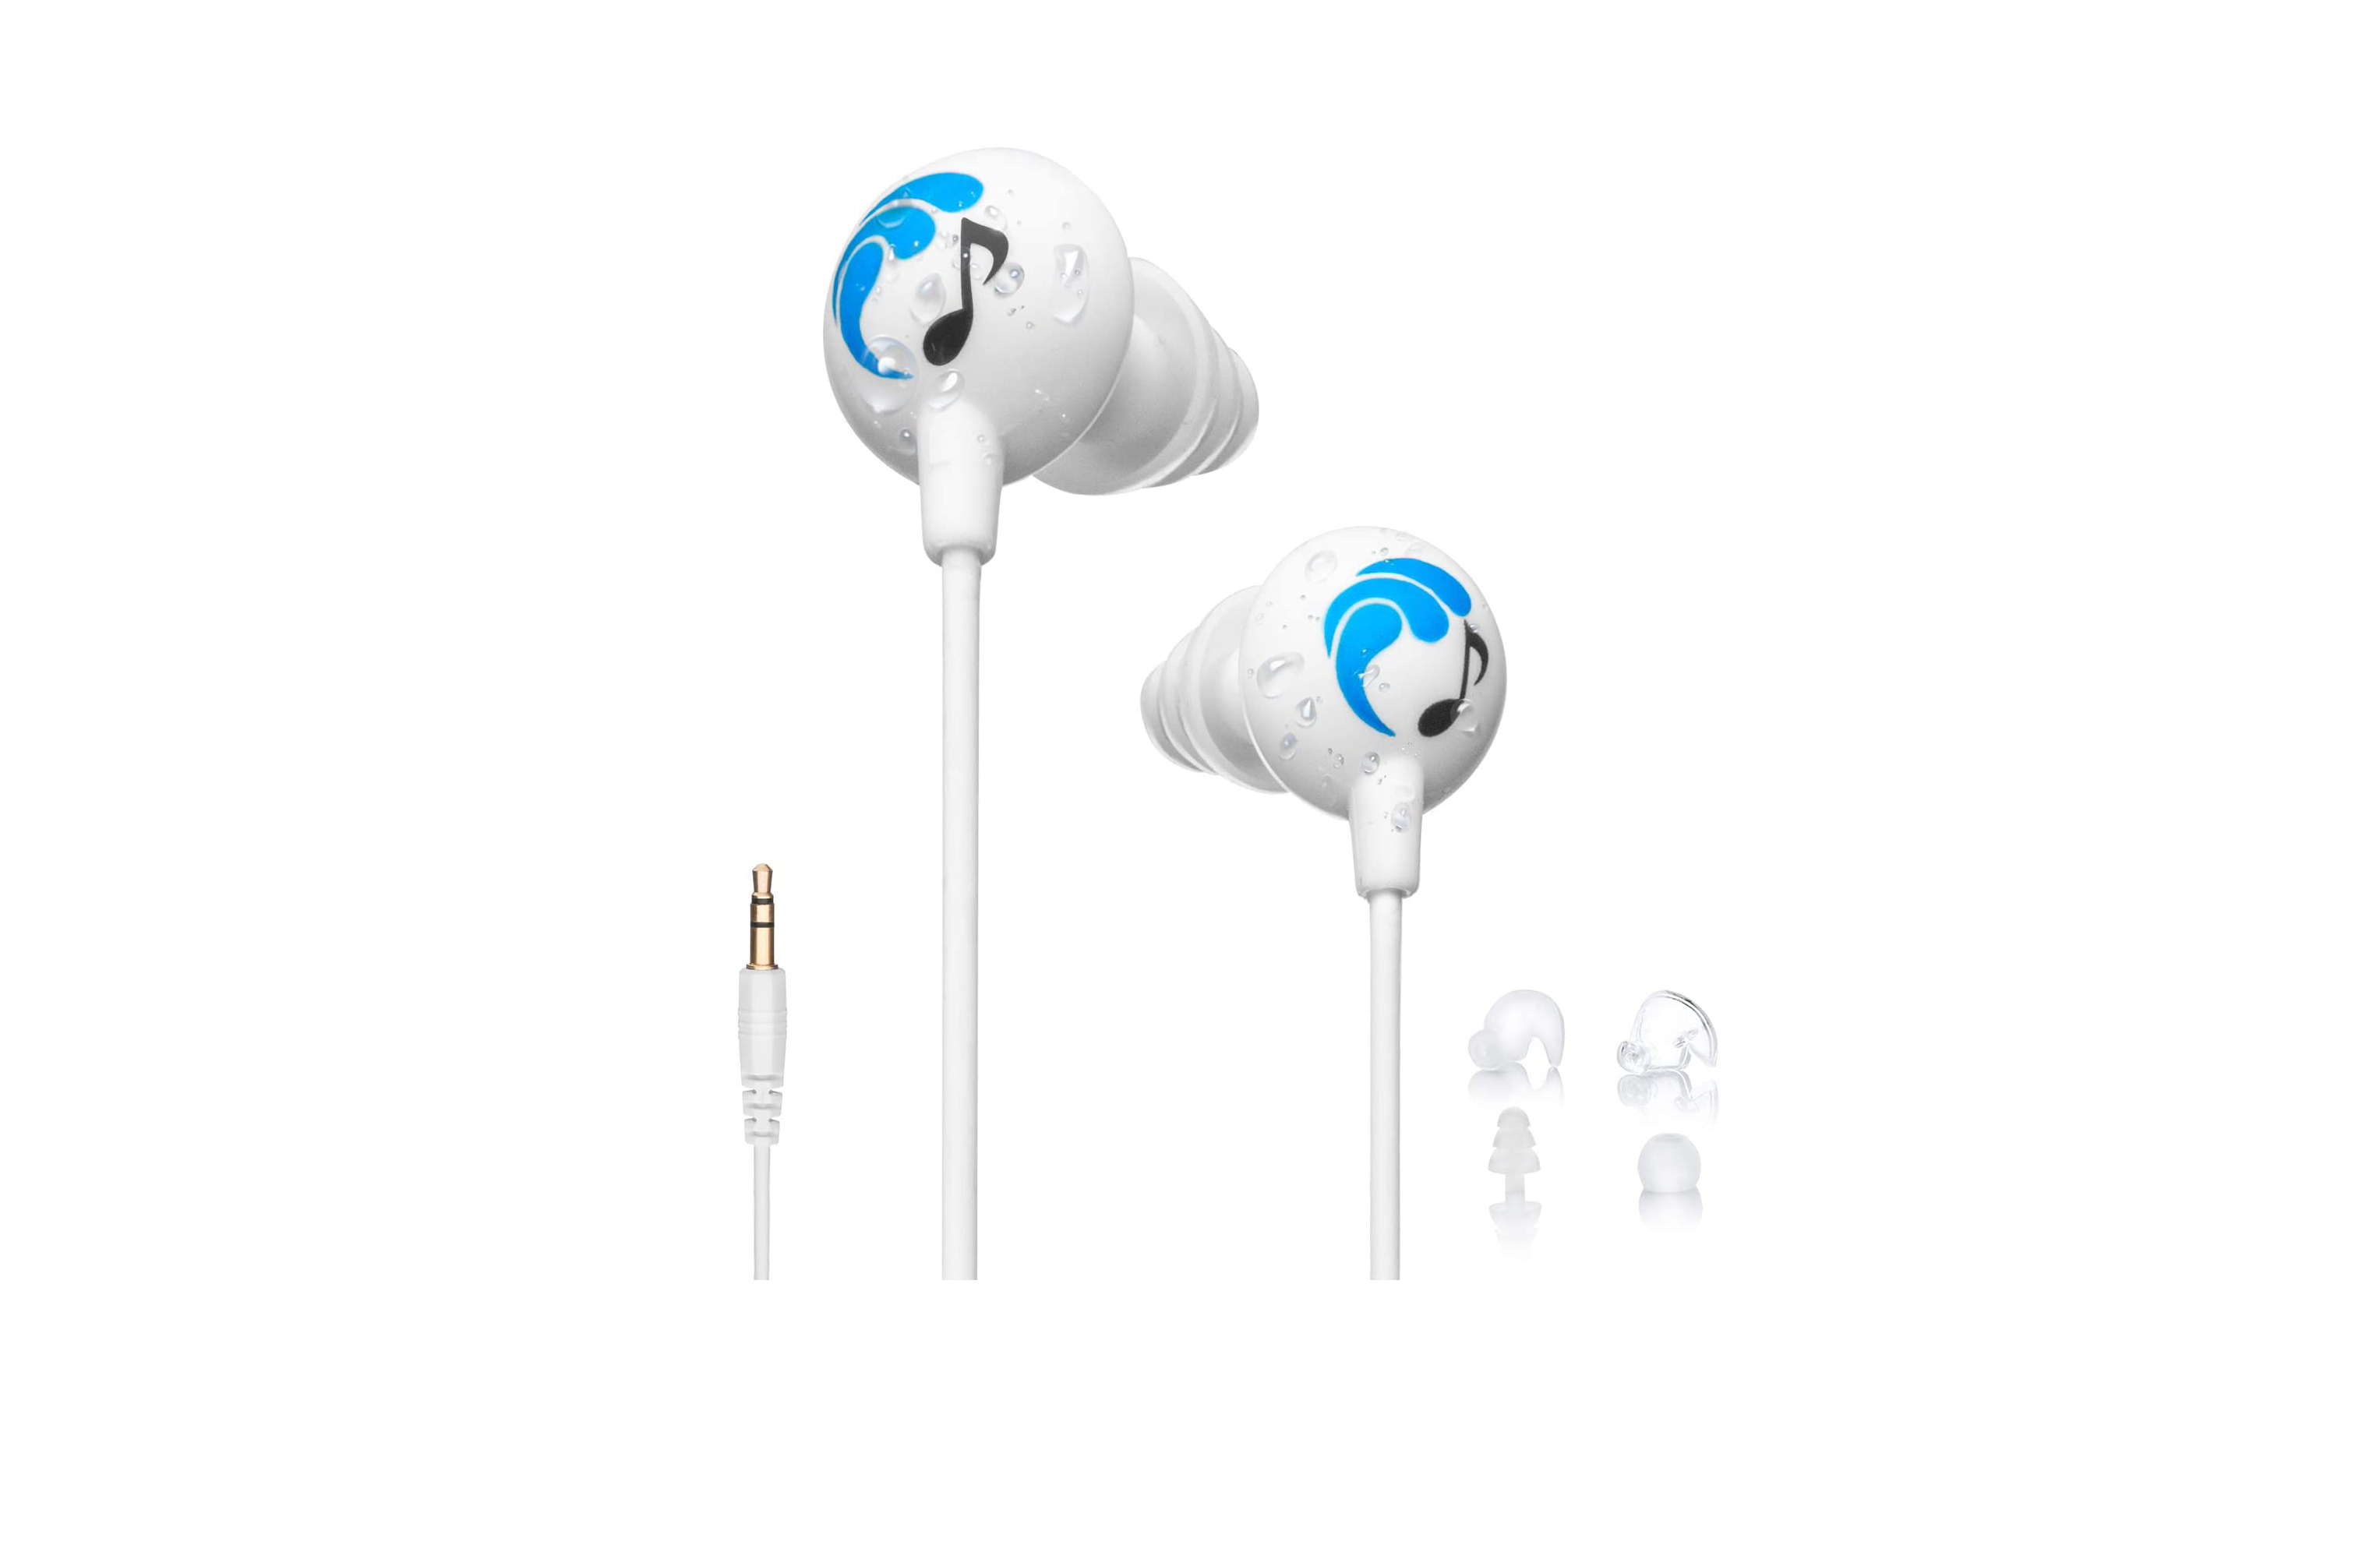 Swimbuds Sport Waterproof Headphones on white background